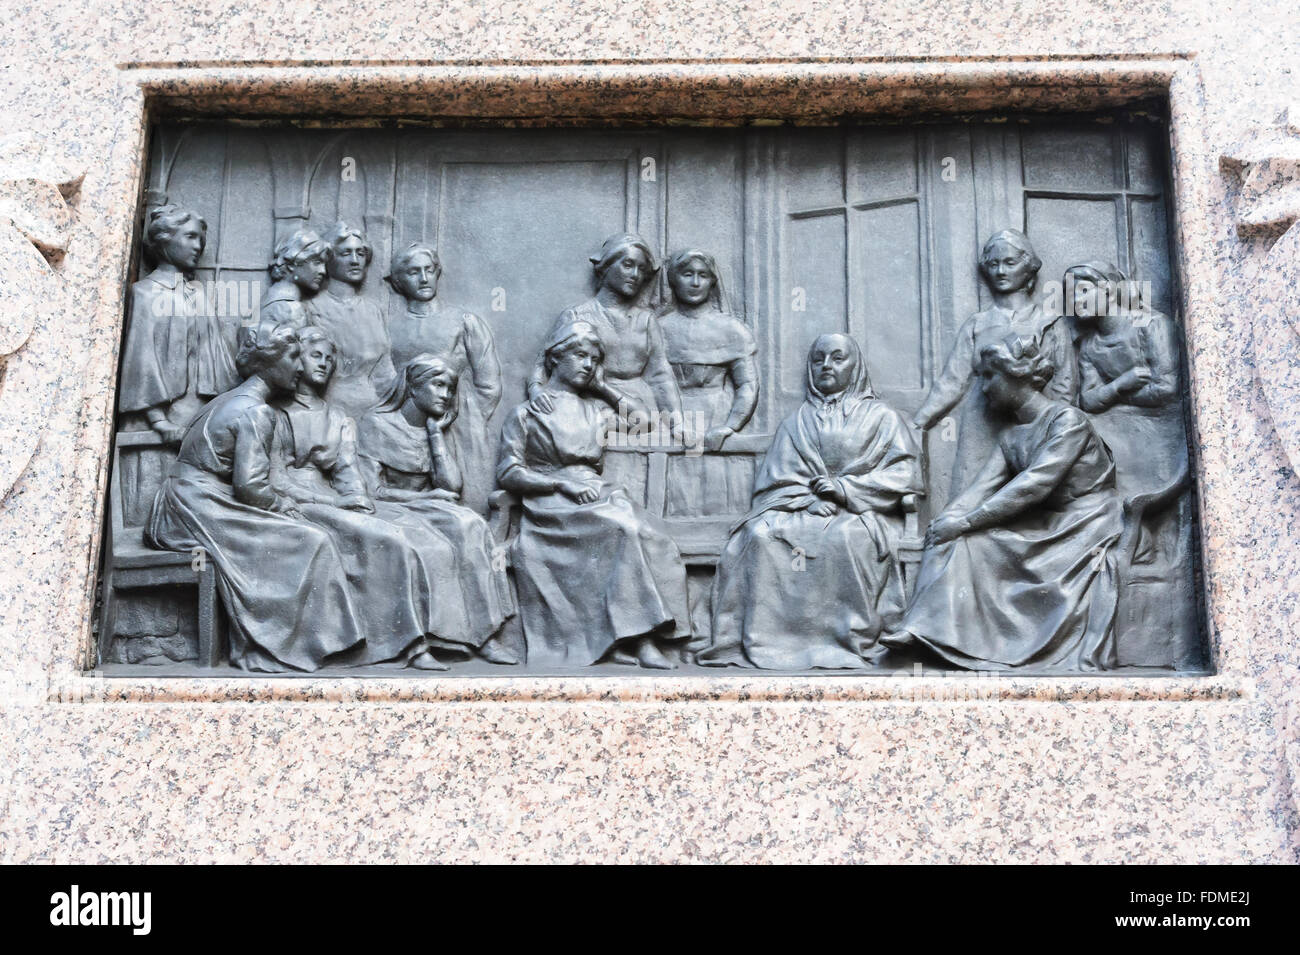 Bajorrelieve en bronce de eventos históricos durante la Guerra de Crimea en los cuatros lados del monumento, Florence Nightingale de Londres. Foto de stock